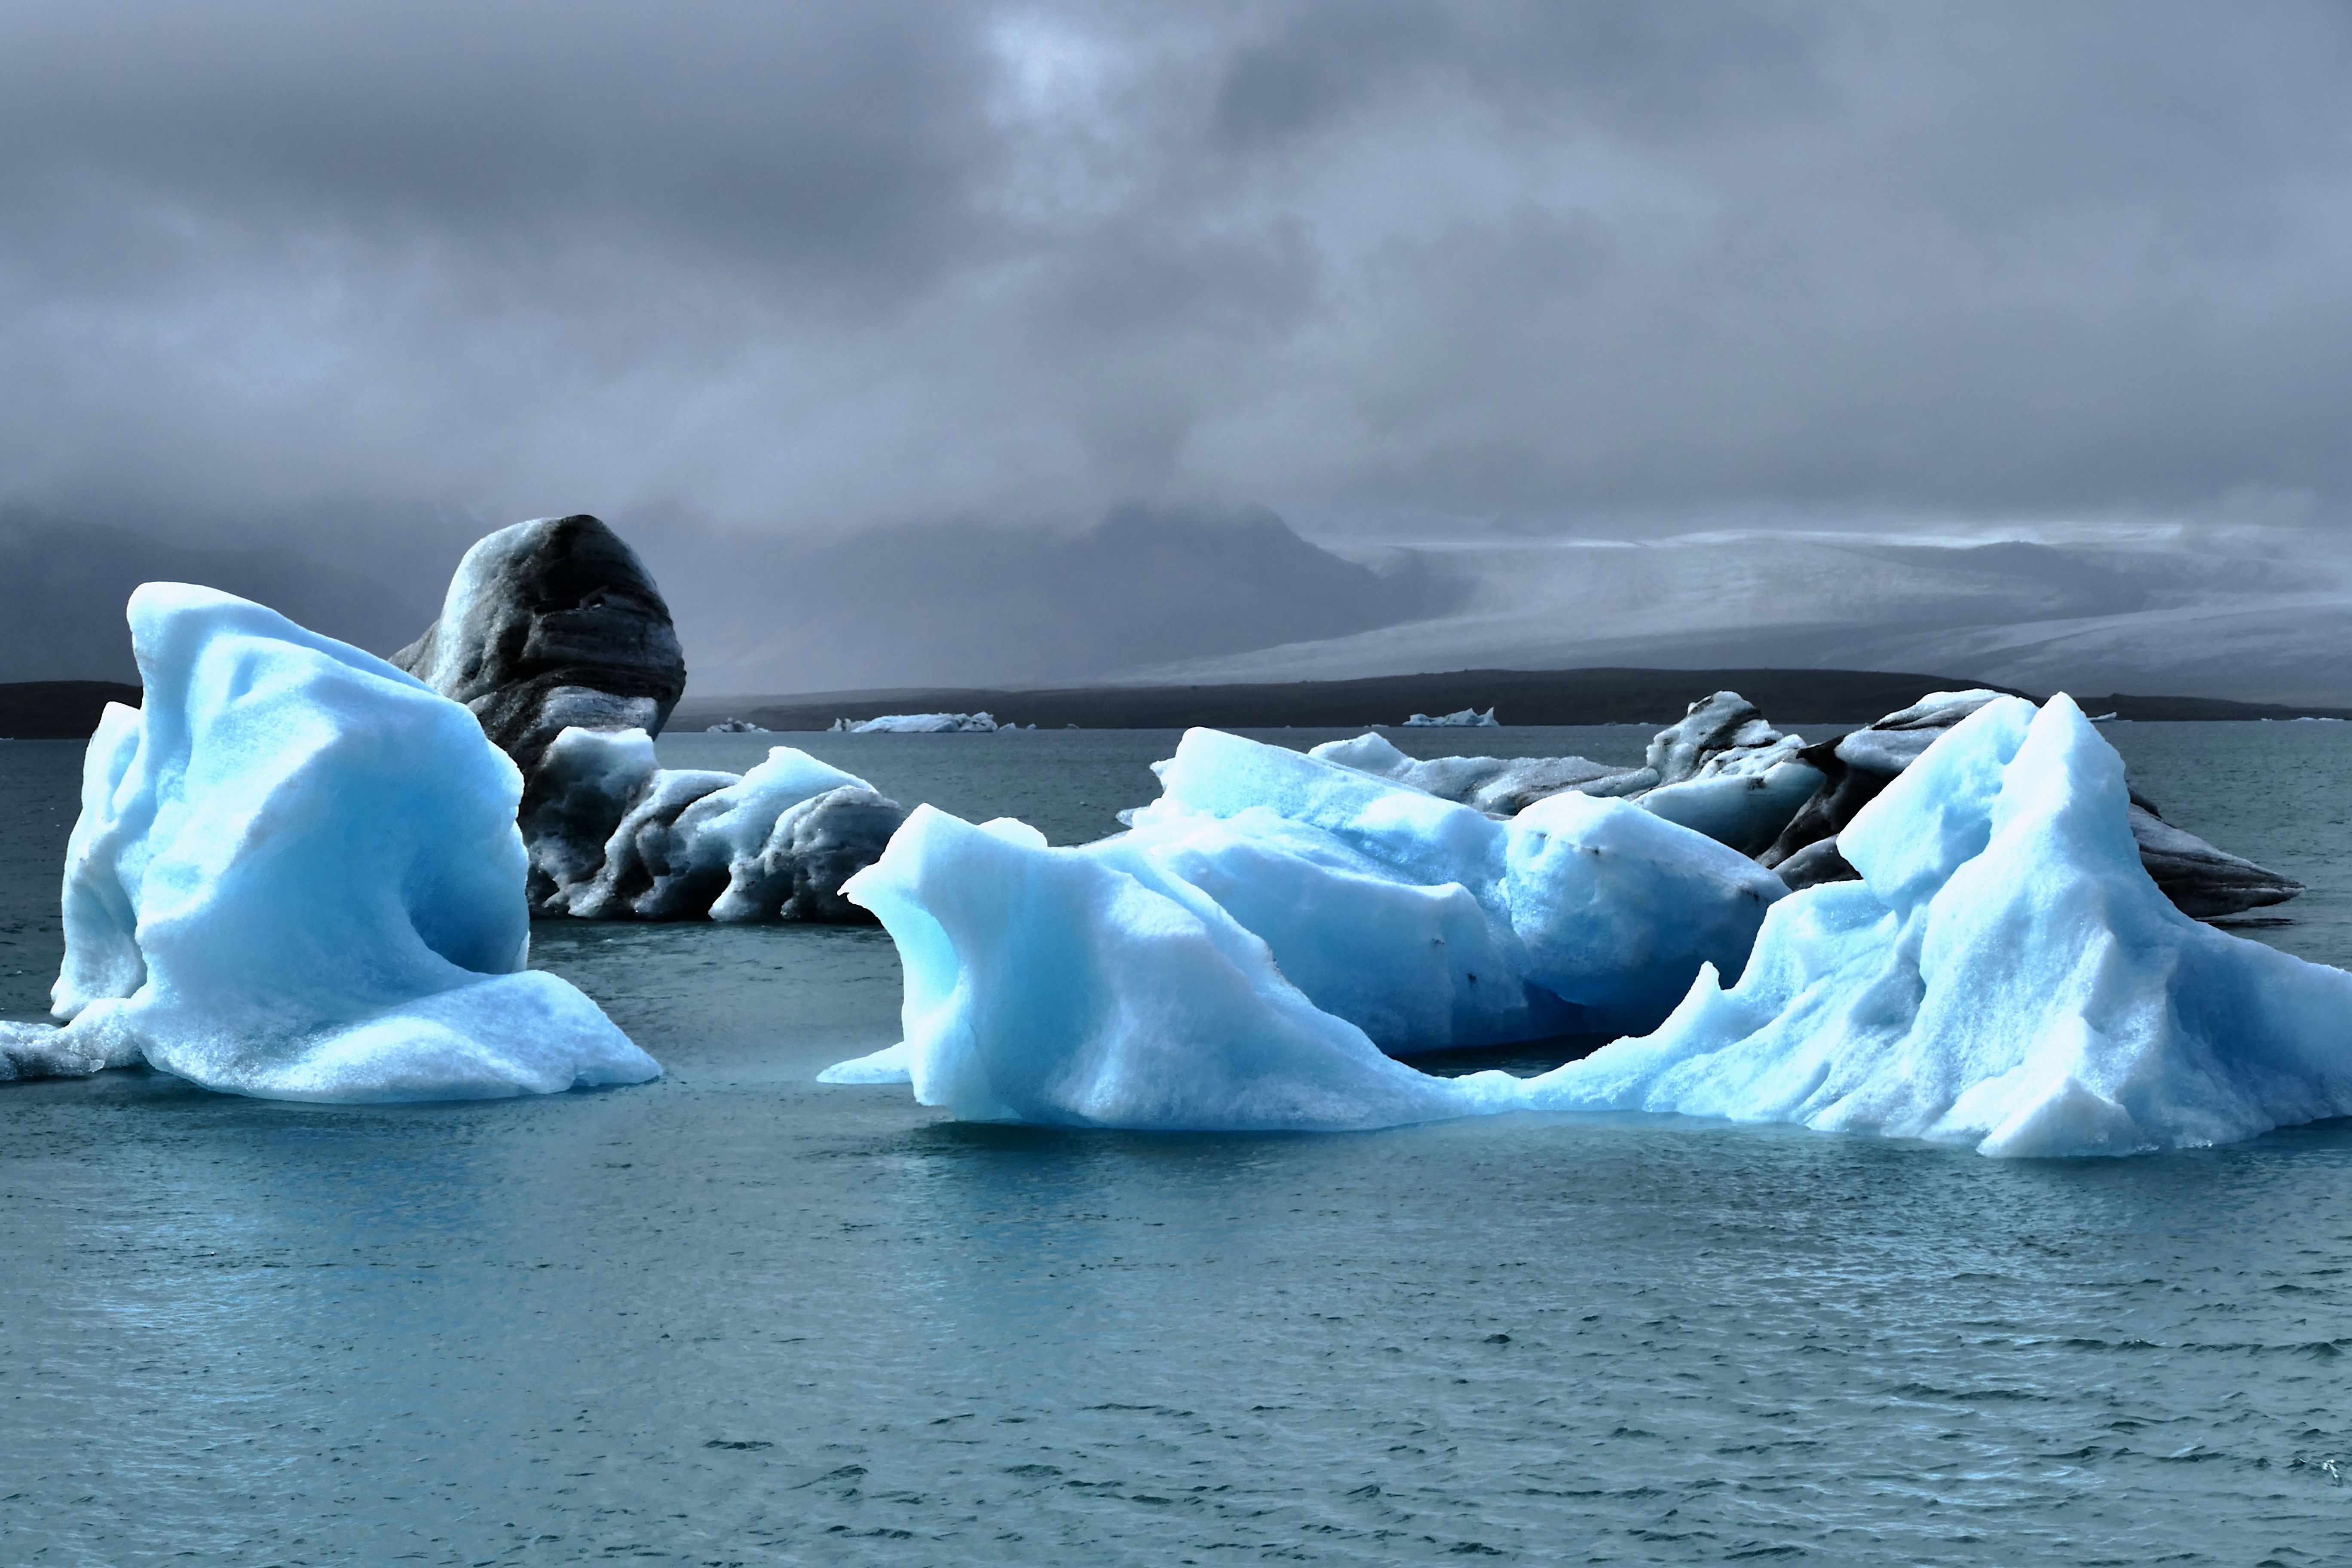 7e Premi   On és el Titanic  Llacuna glacial de Jokursarlon, Islandia  FOTO: Mar Alonso Beneito 